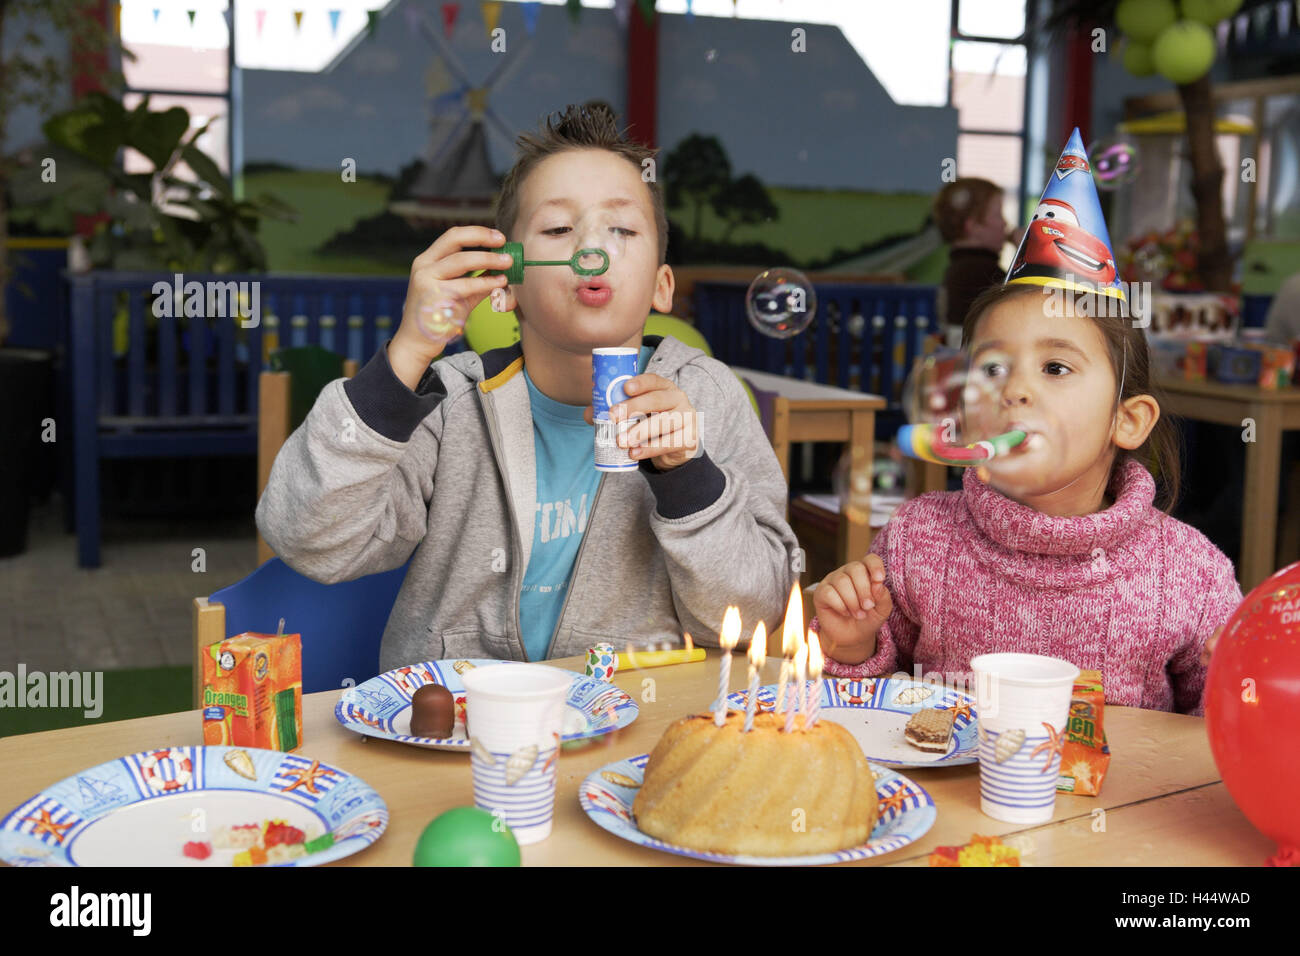 Kinder Geburtstagsparty, junge, Mädchen, Papierhüte, Seifenblasen, Kuchen, Kerzen, brennen, Menschen, Kinder, Geschwister, Geburtstagstorten, Party, Geburtstagsparty, feiern, Vergnügungen, glücklich, spielen, Party-Mützen, Kopfbedeckungen, Spaß, Freude, fröhlich, Stockfoto